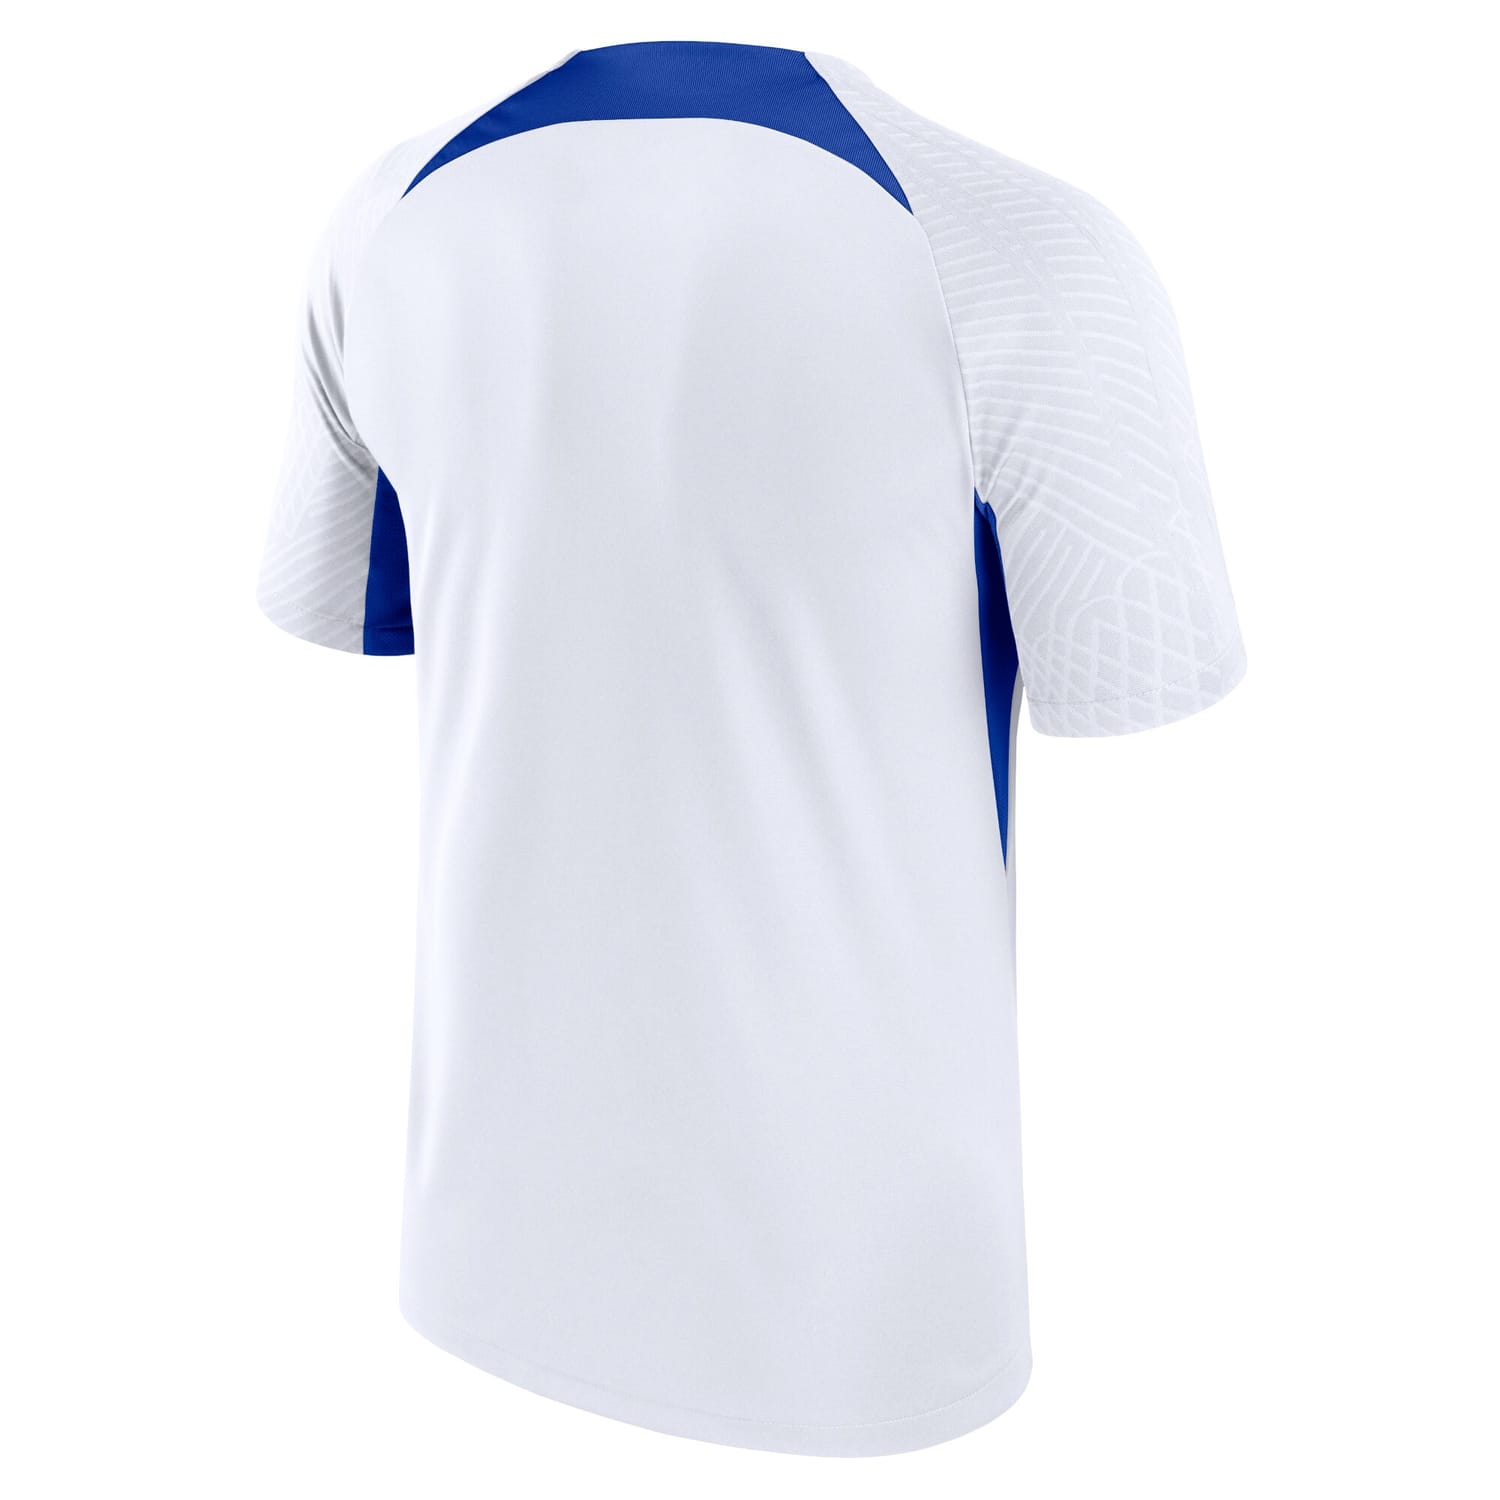 France National Team Training Jersey Shirt White for Men